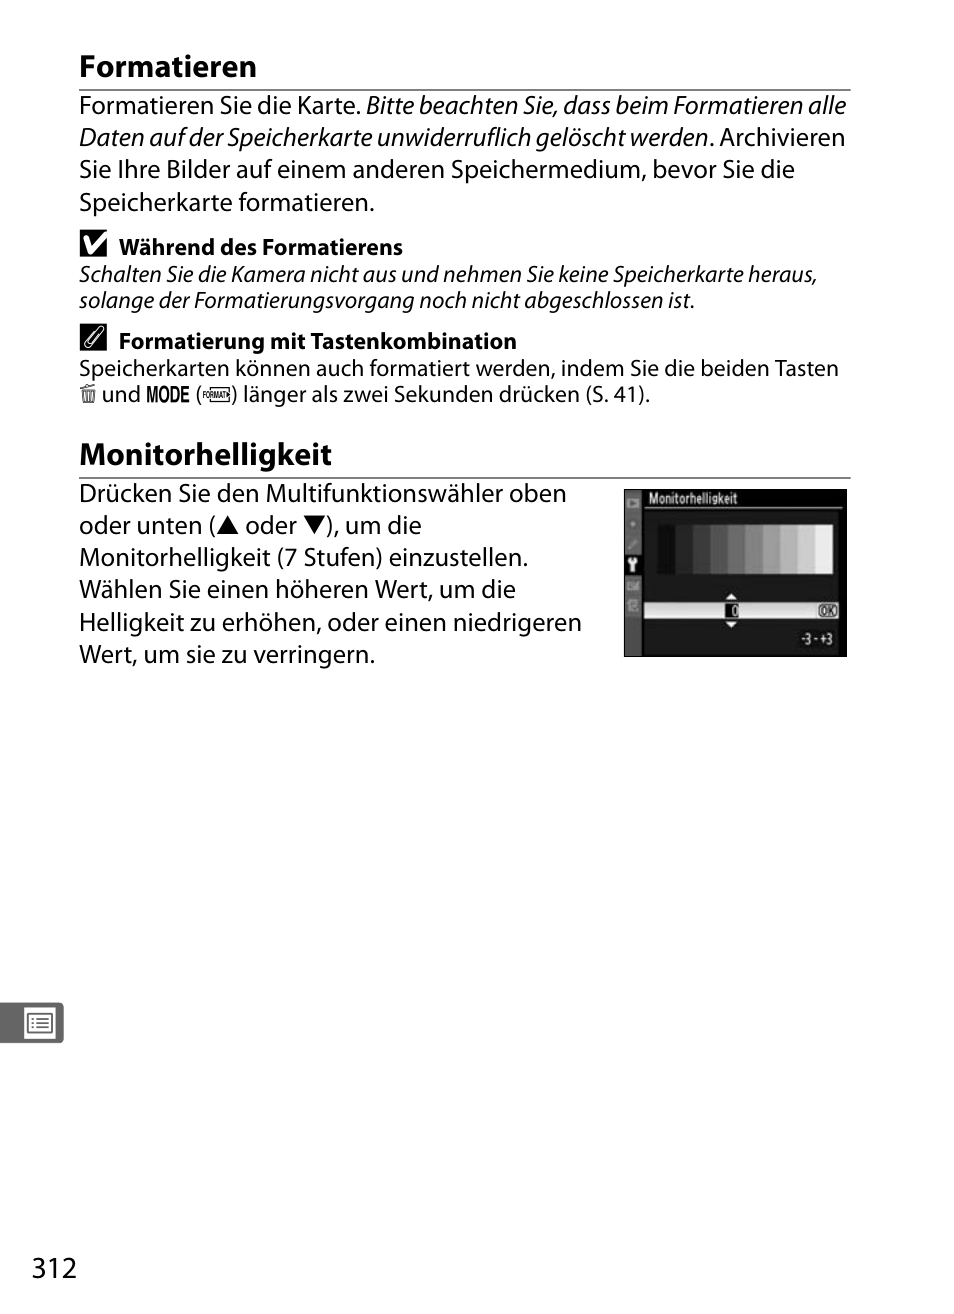 Formatieren, Monitorhelligkeit | Nikon D300 Benutzerhandbuch | Seite 338 / 452